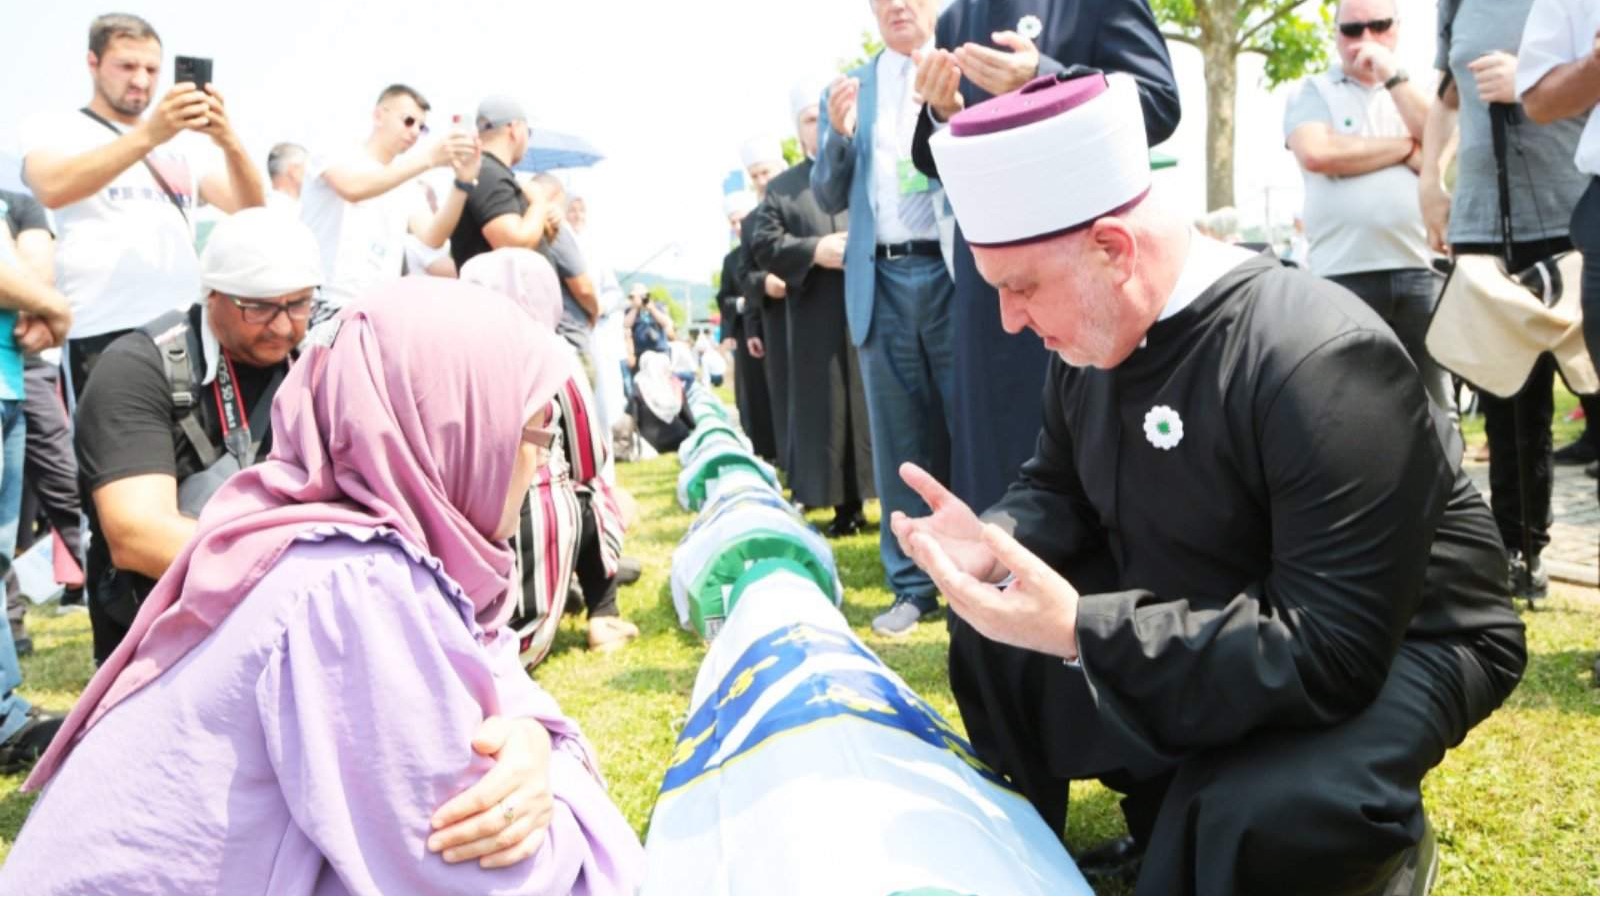 Reisul-ulema obišao tabute 30 žrtava genocida 